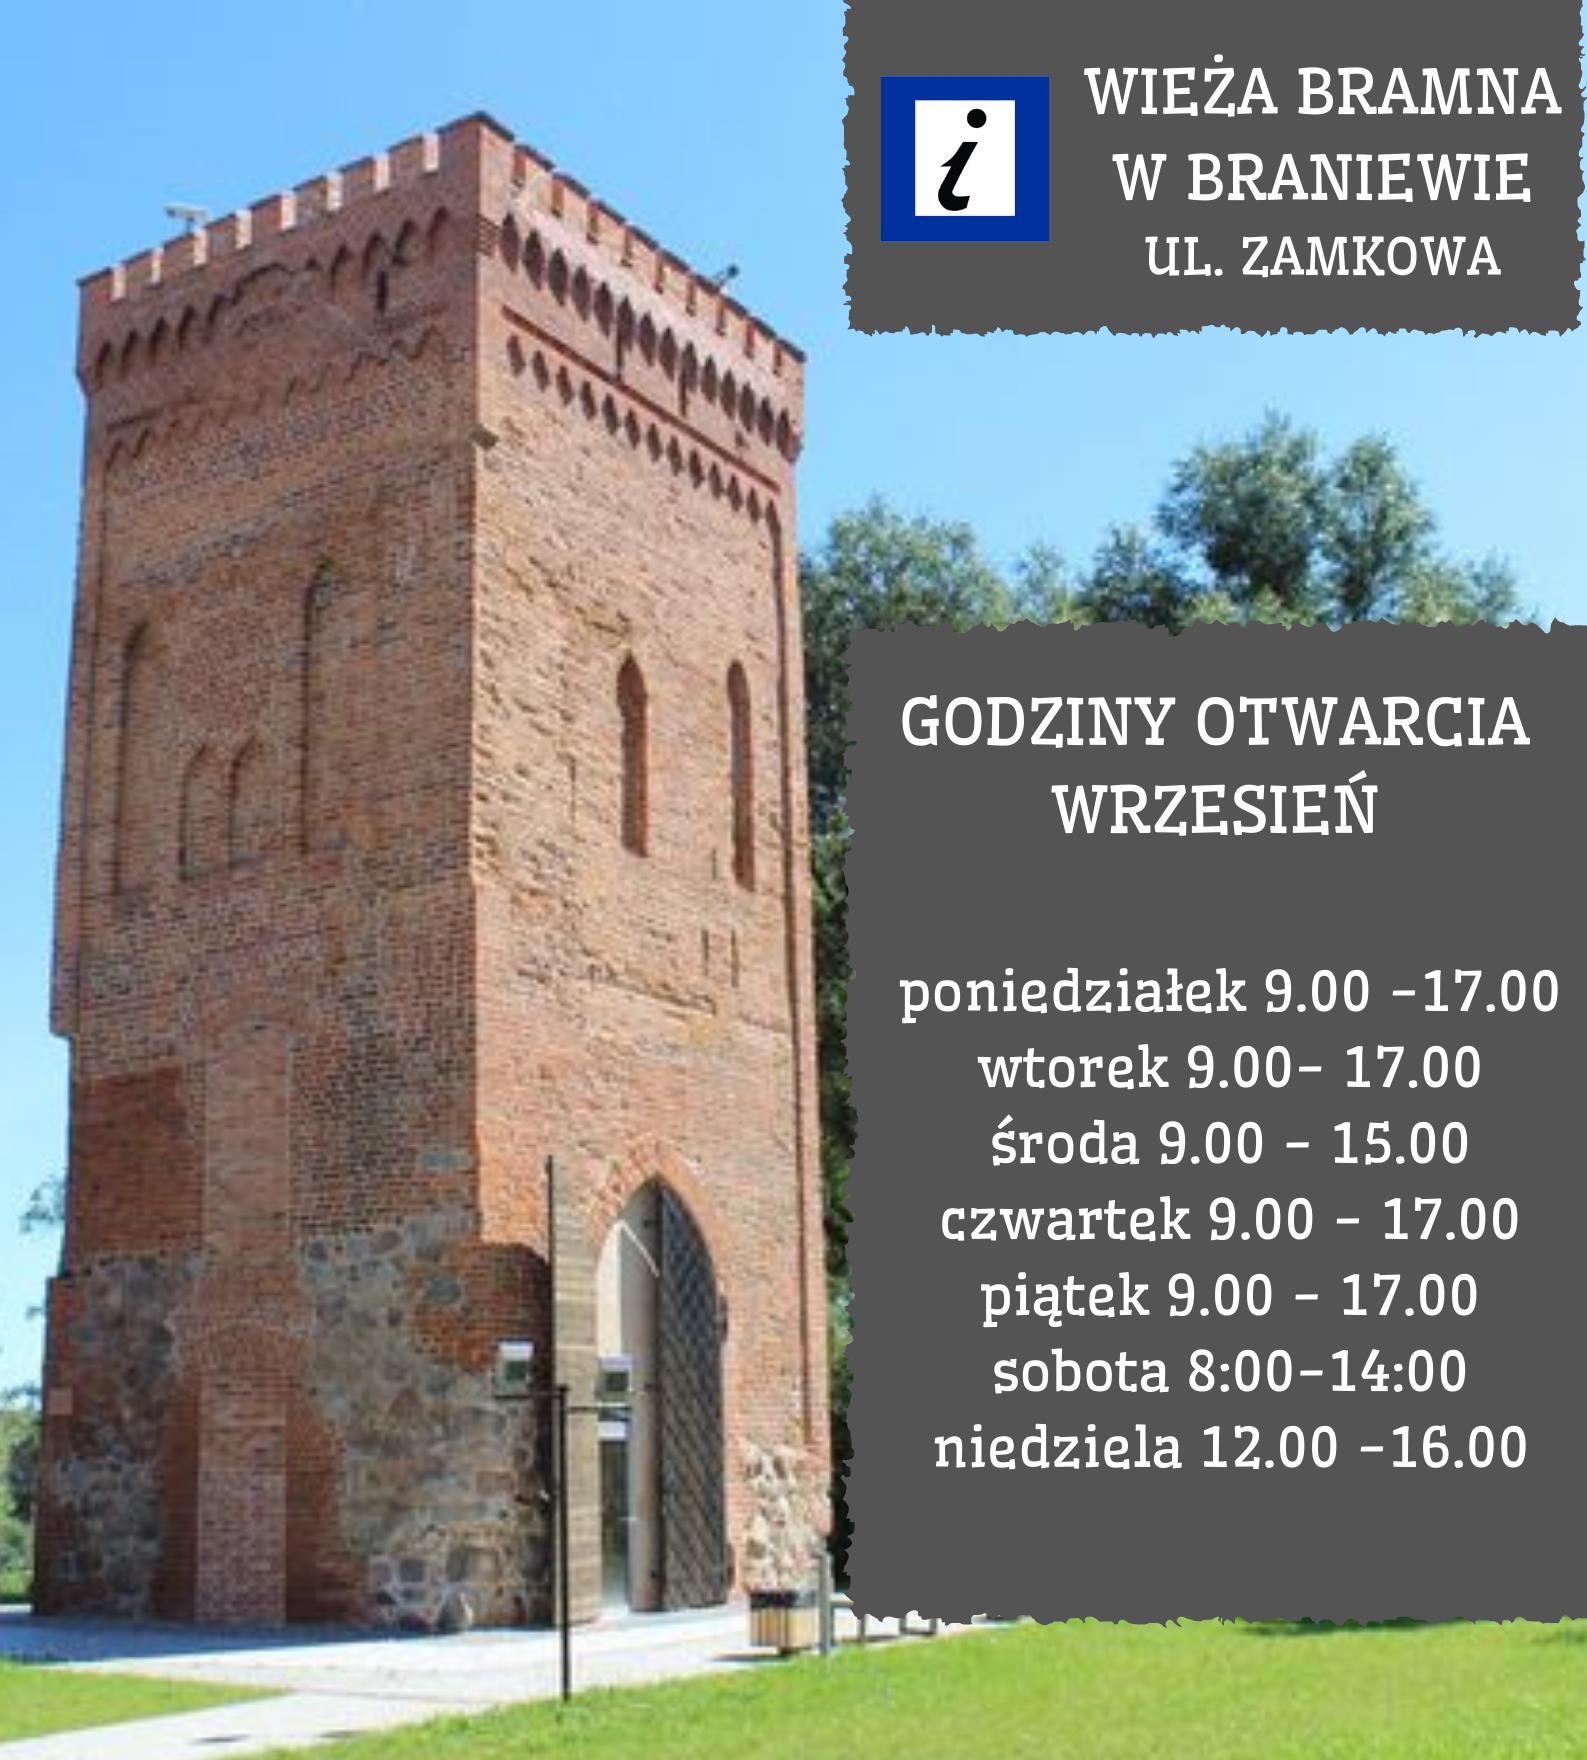 Informacja o godzinach otwarcia Wieży Bramnej w Braniewie. Poniedziałek - wtorek 9.00 - 17.00 środa 9.00 - 15.00 czwartek - piątek 9.00 - 17.00 sobota 10.00 - 16.00 niedziela 12.00 - 16.00terminy otwarcia wiezy bramnej we wrześniu. Po lewej fotografia obiektu Wieży Bramnej. 